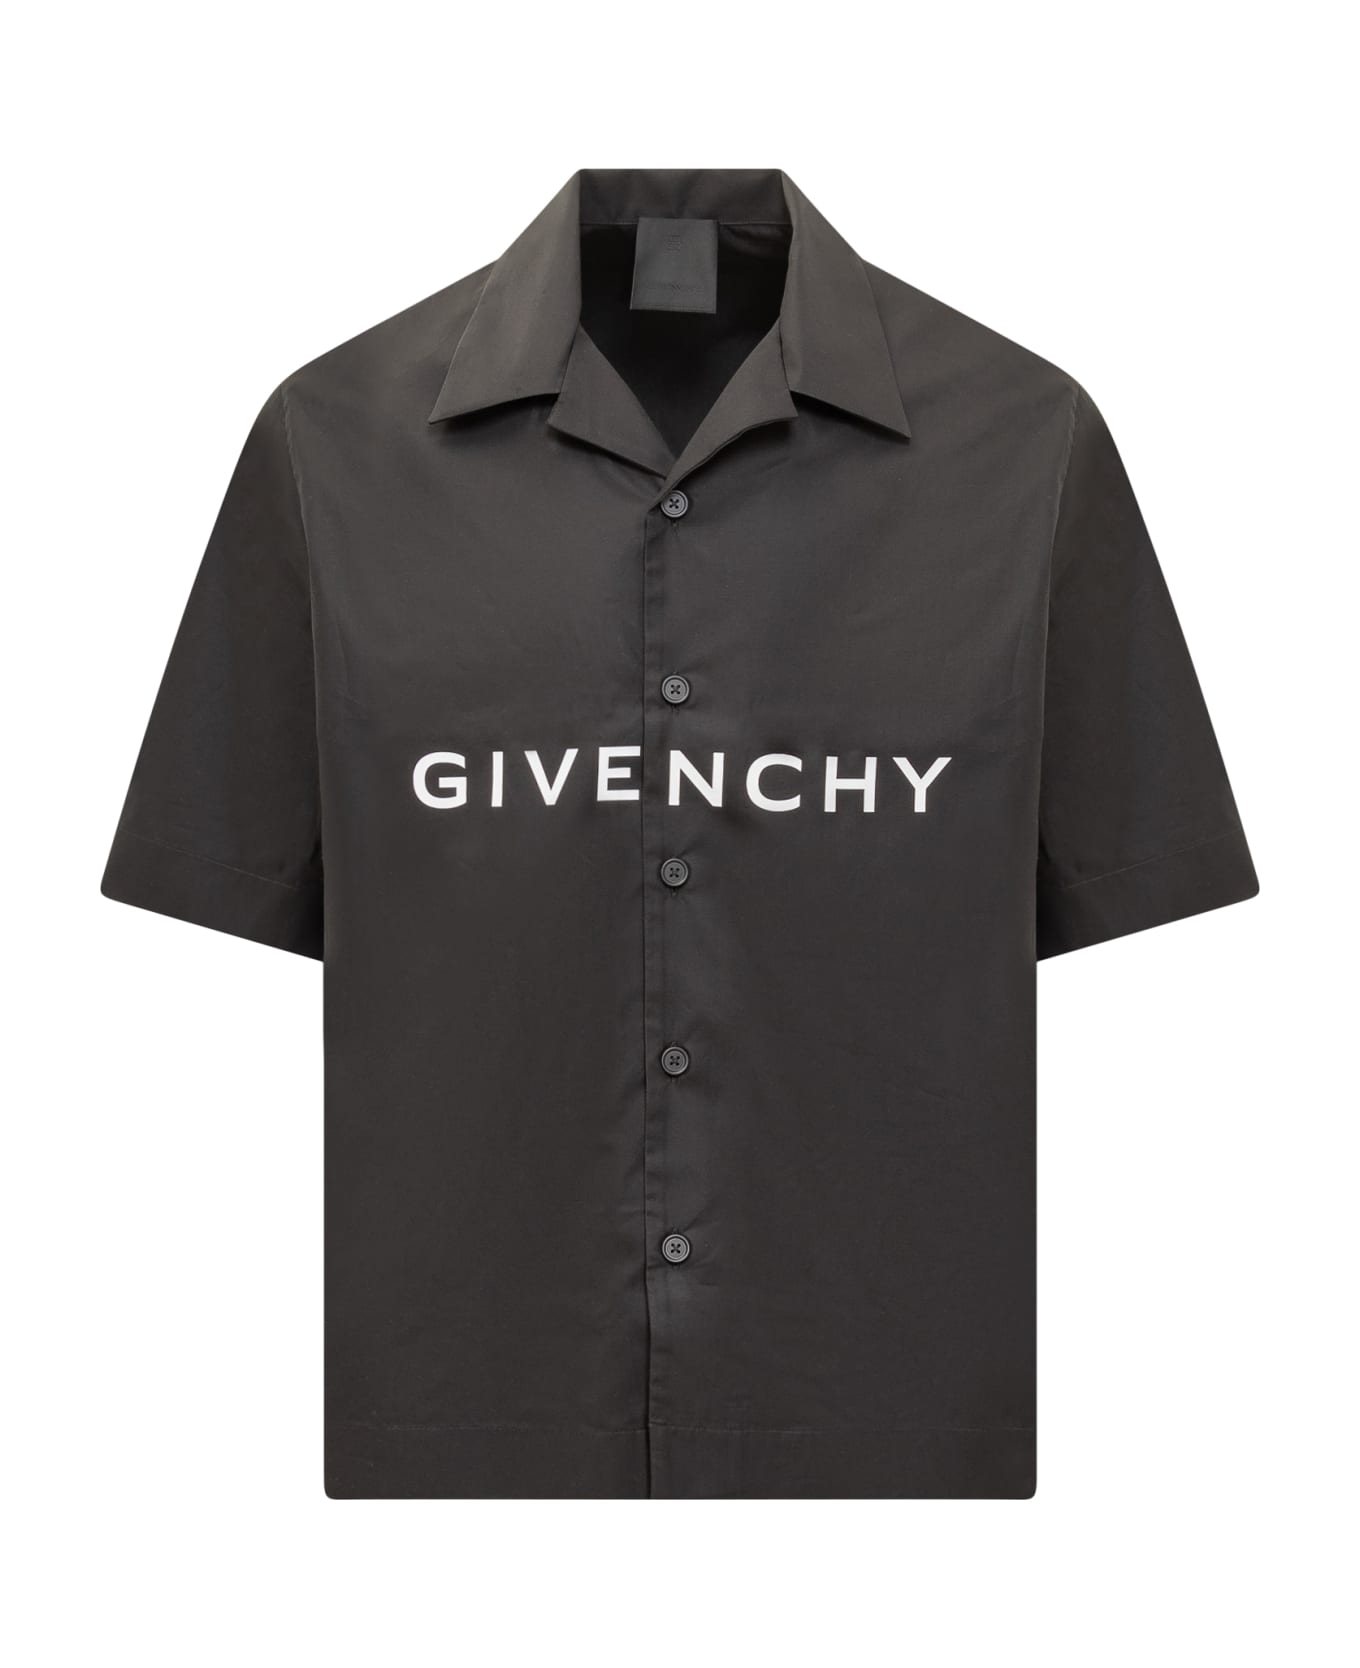 Givenchy Bowling Shirt - Nero シャツ